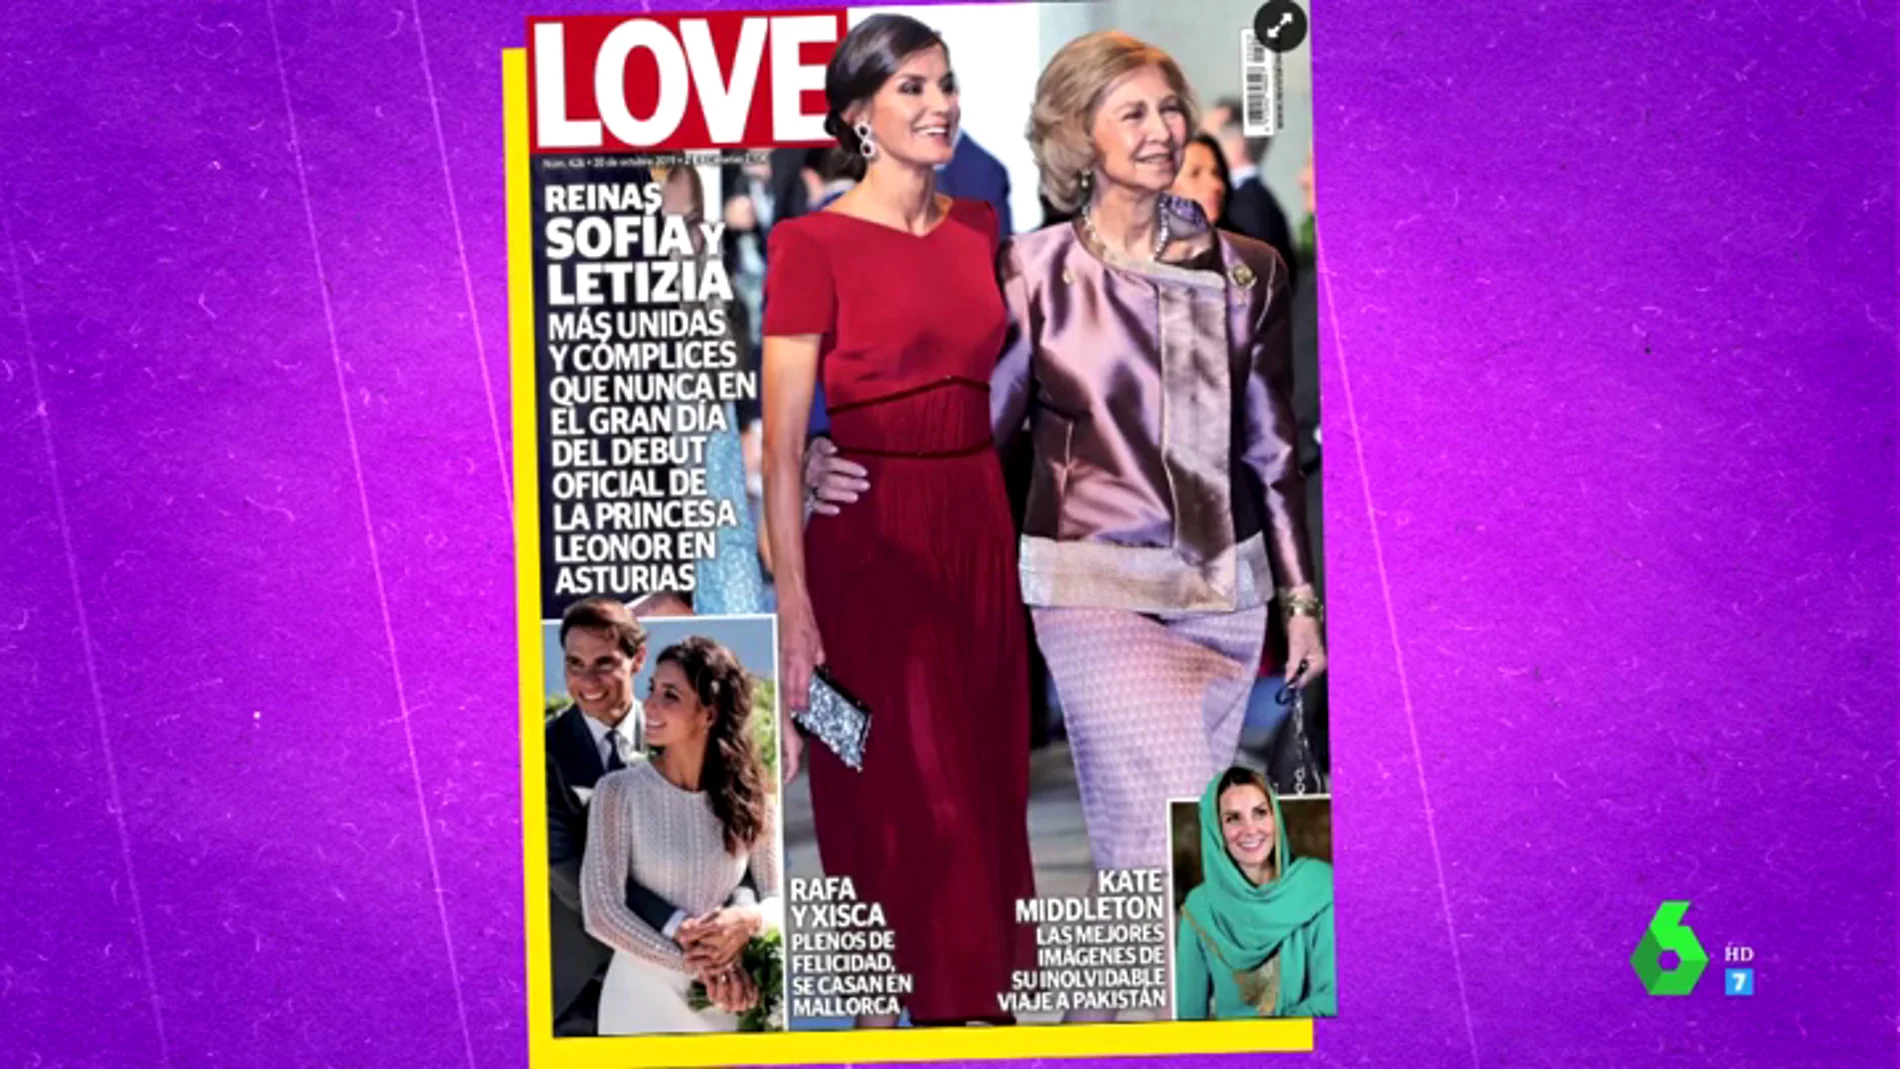 El análisis de Zapeando sobre la foto de Letizia y Sofía, "las reinas Happy flower"